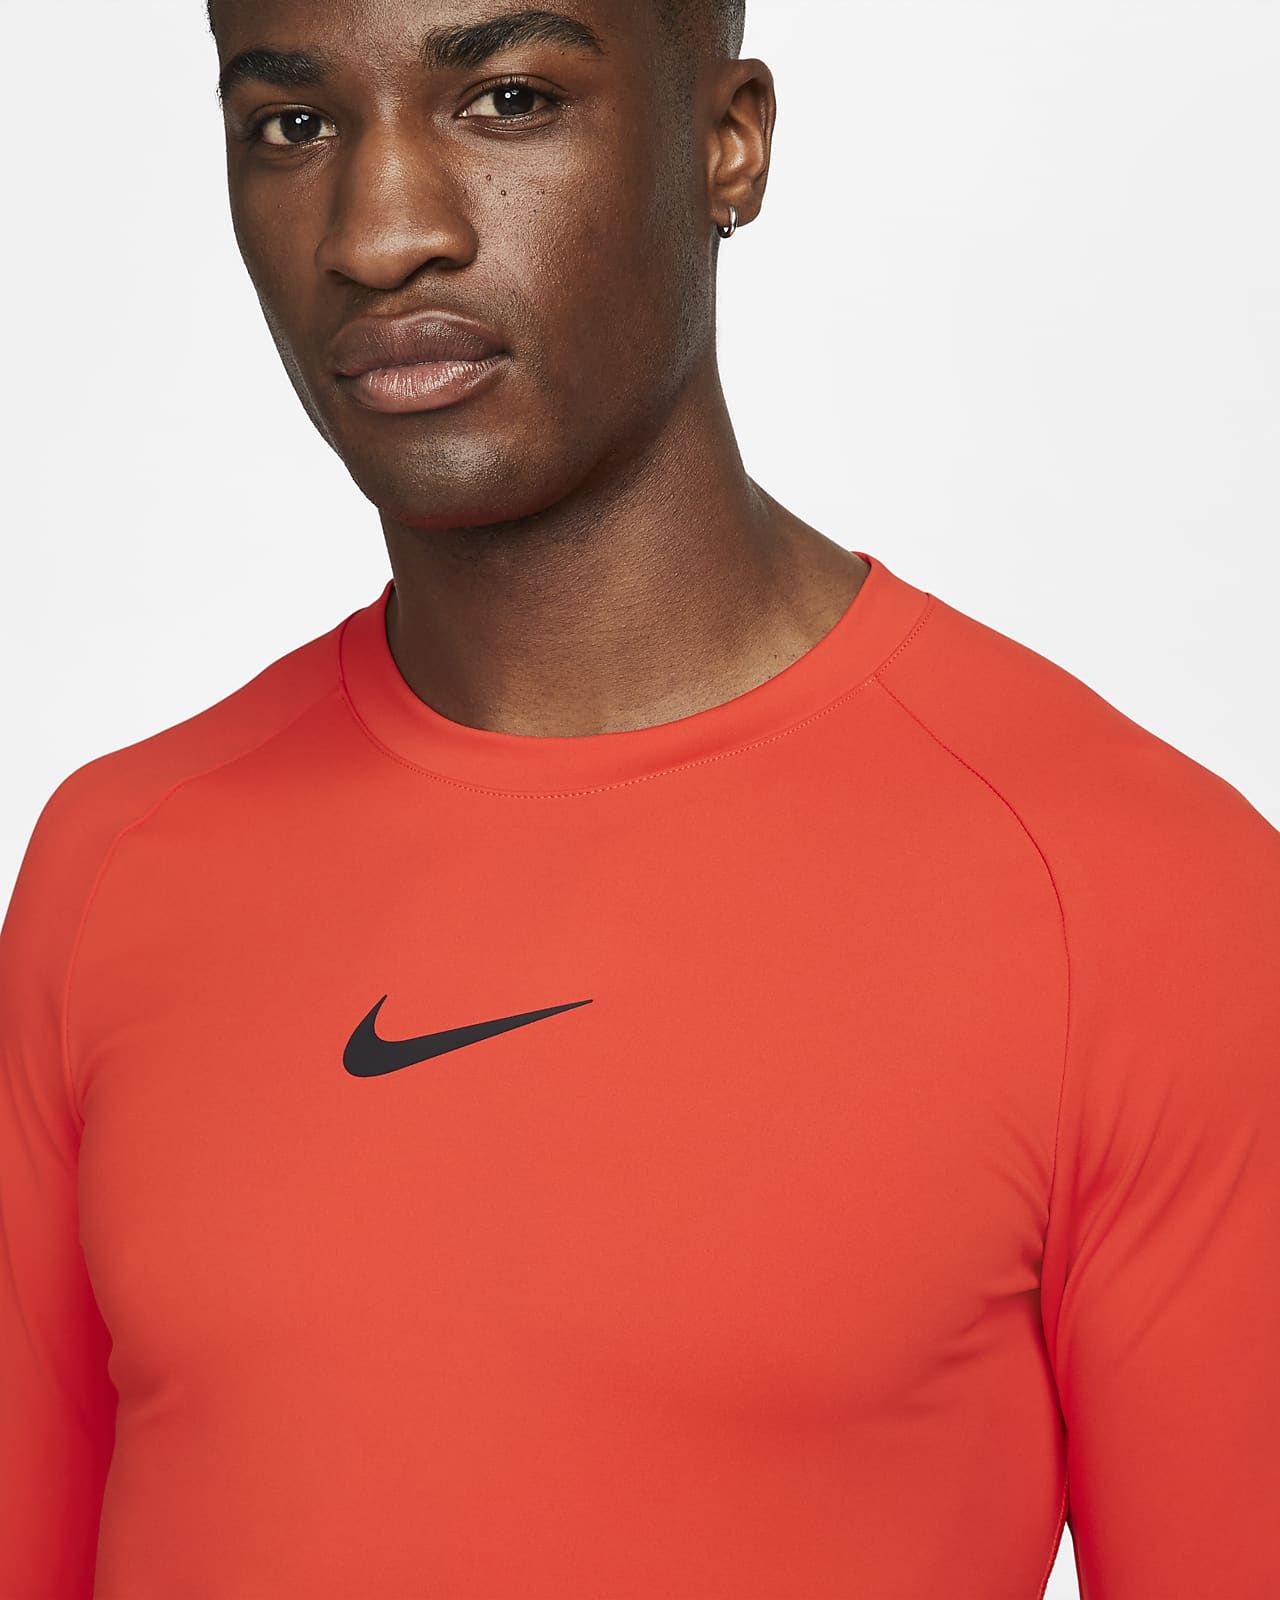 Nike Pro Dri-FIT ADV Men's Long-Sleeve Training Top. Nike.com | Nike (US)